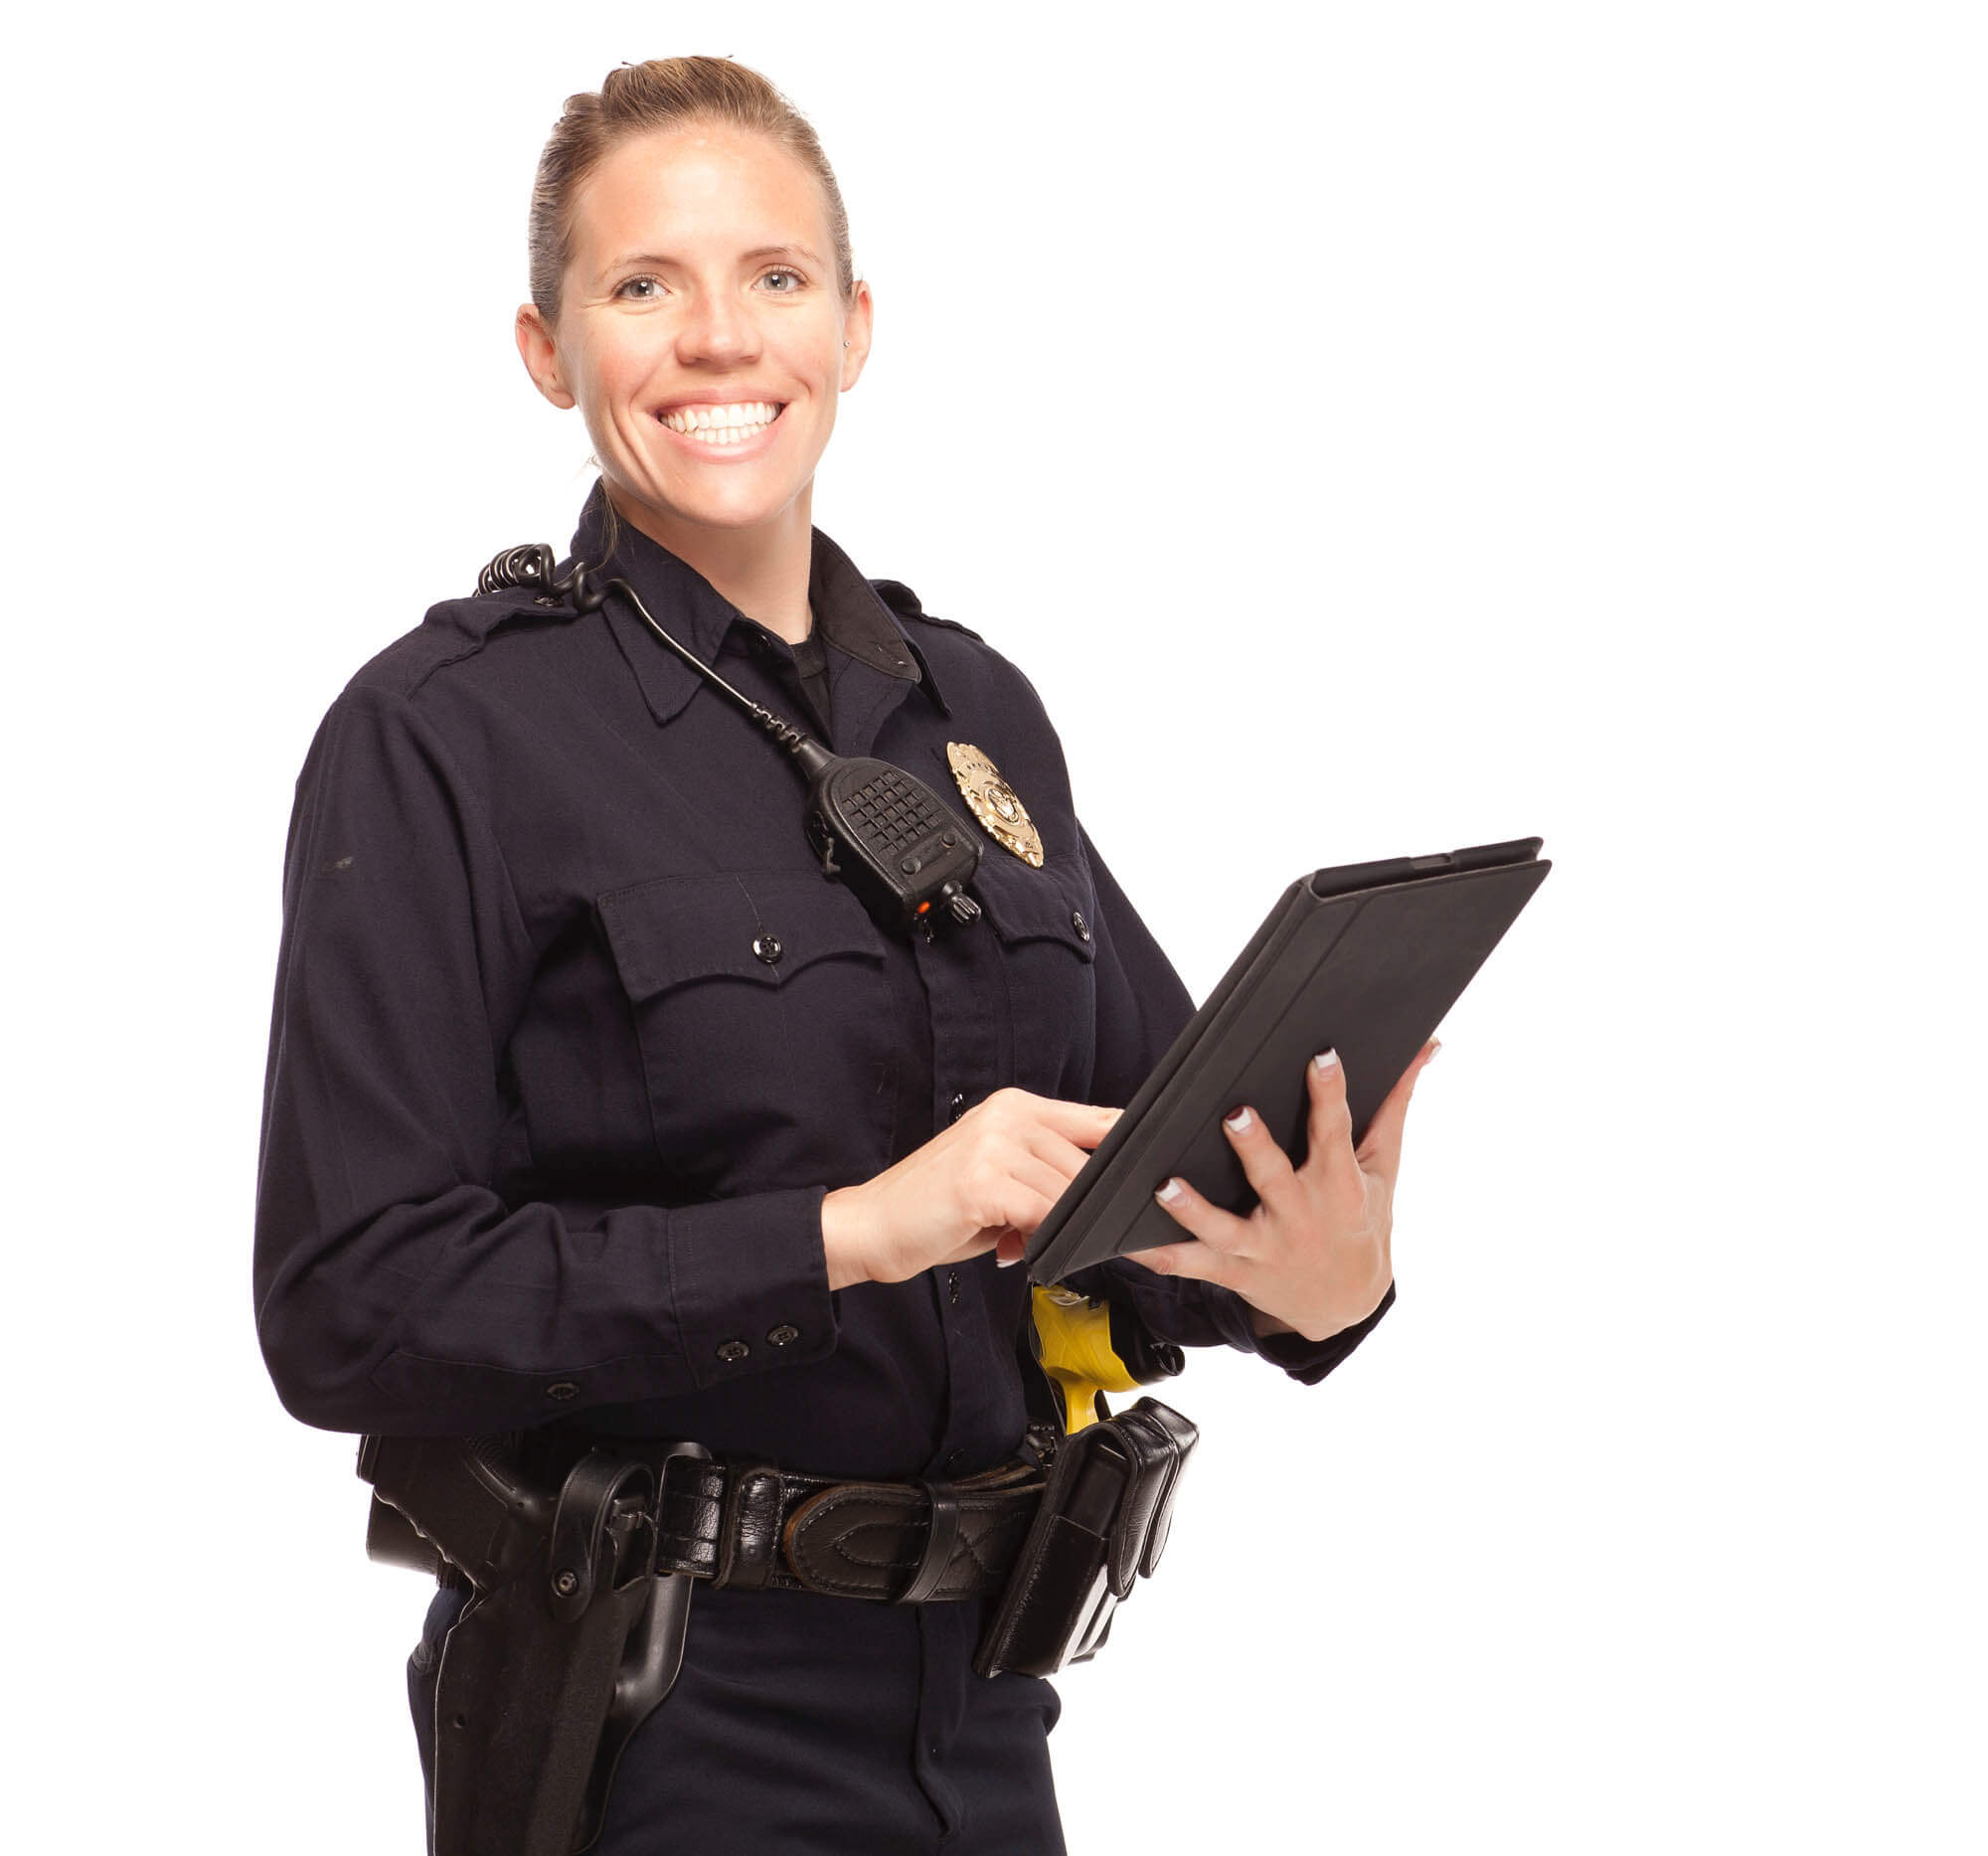 Law Enforcer on iPad - Law Enforcement Electronic Bracelet